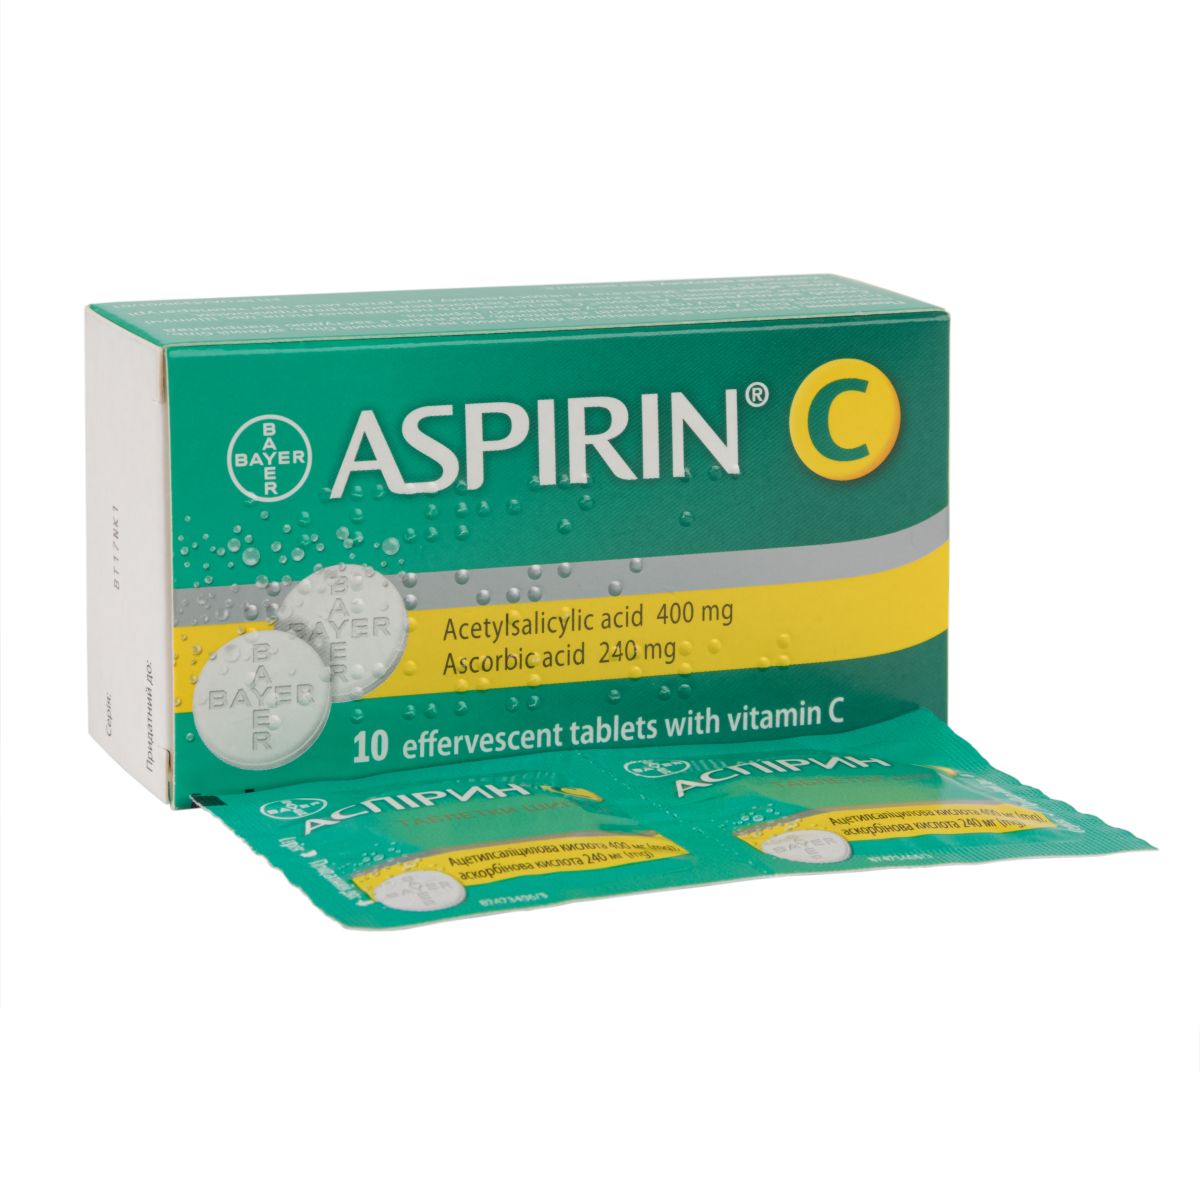 Можно ли аспирин при высокой температуре?